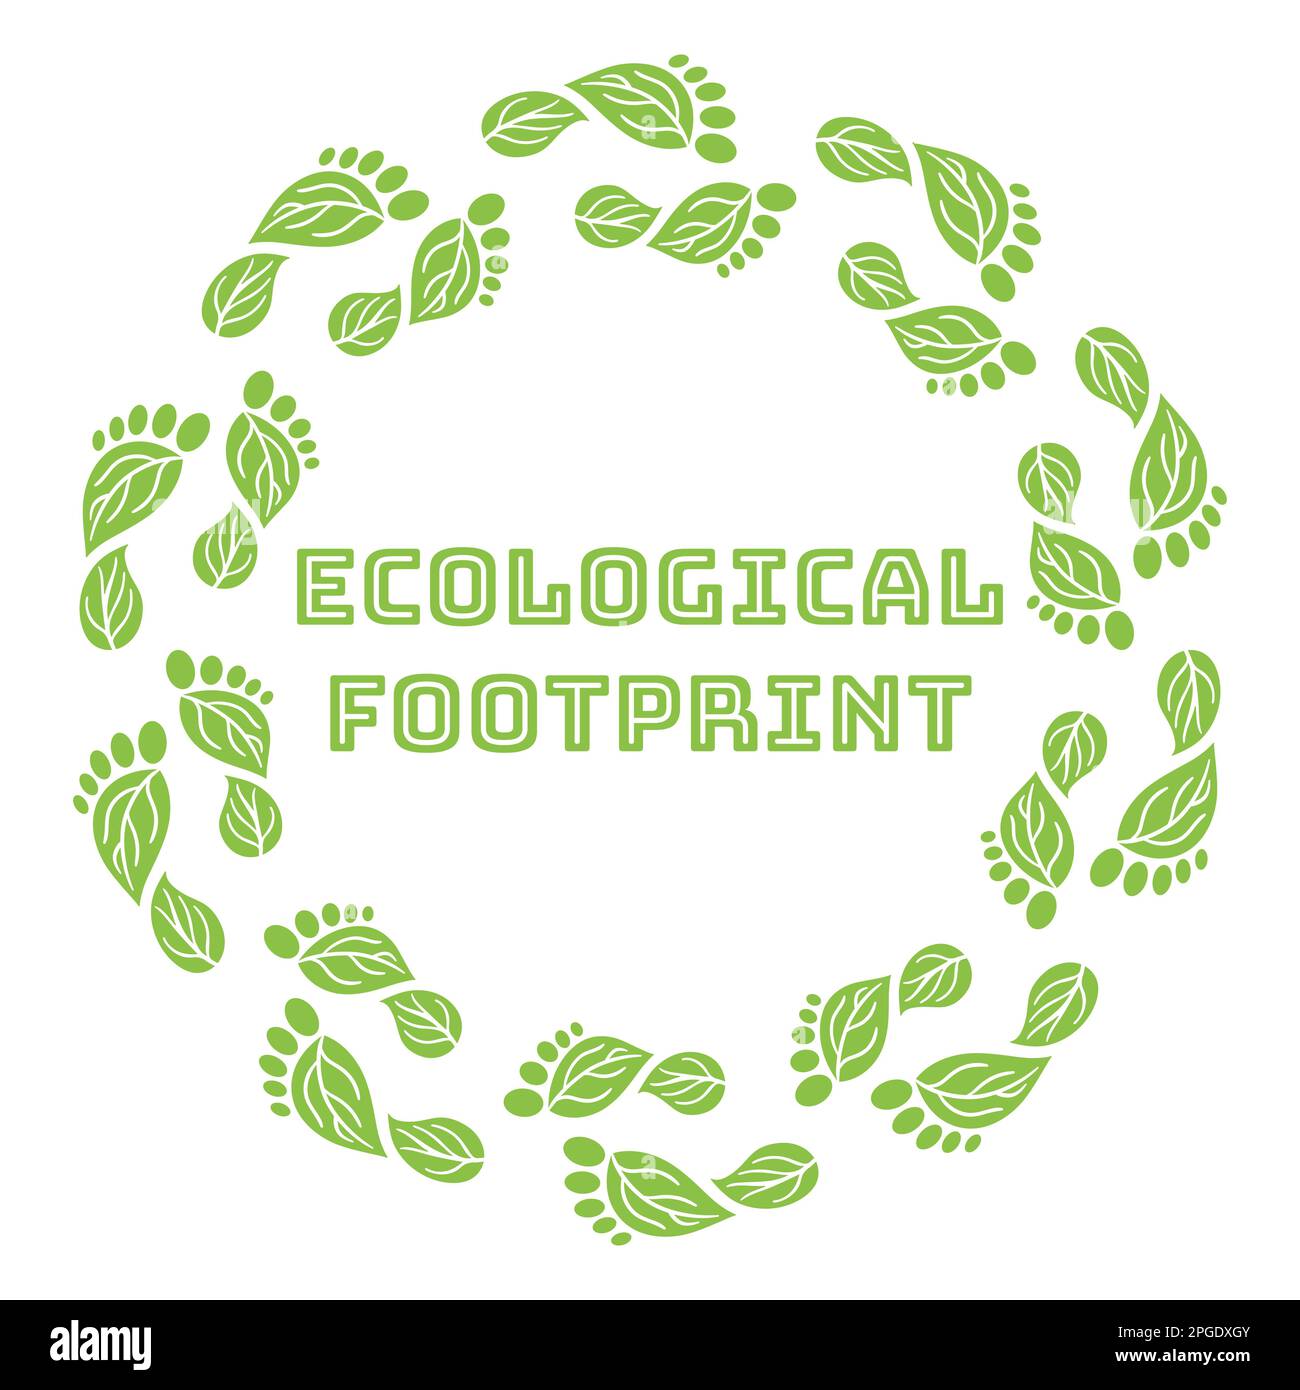 CO2-Fußabdruck-Kranz. CO2 ökologische Fußabdrücke mit grünen Blättern. Treibhausgasemissionen. Umwelt- und Klimaschutzkonzept. Stock Vektor